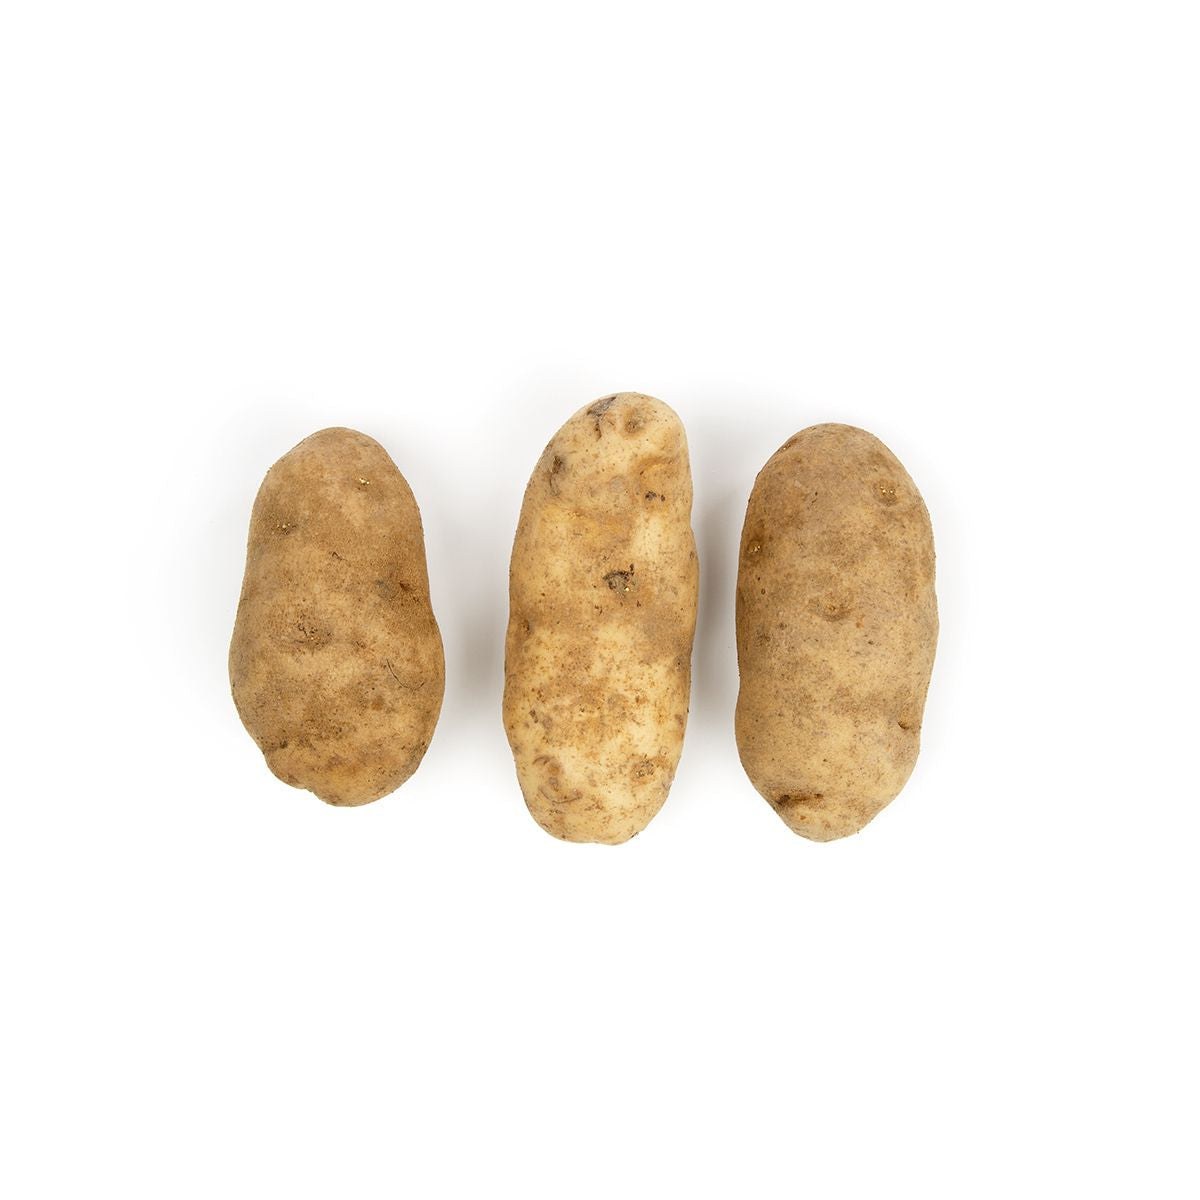 BoxNCase White Chef Potatoes